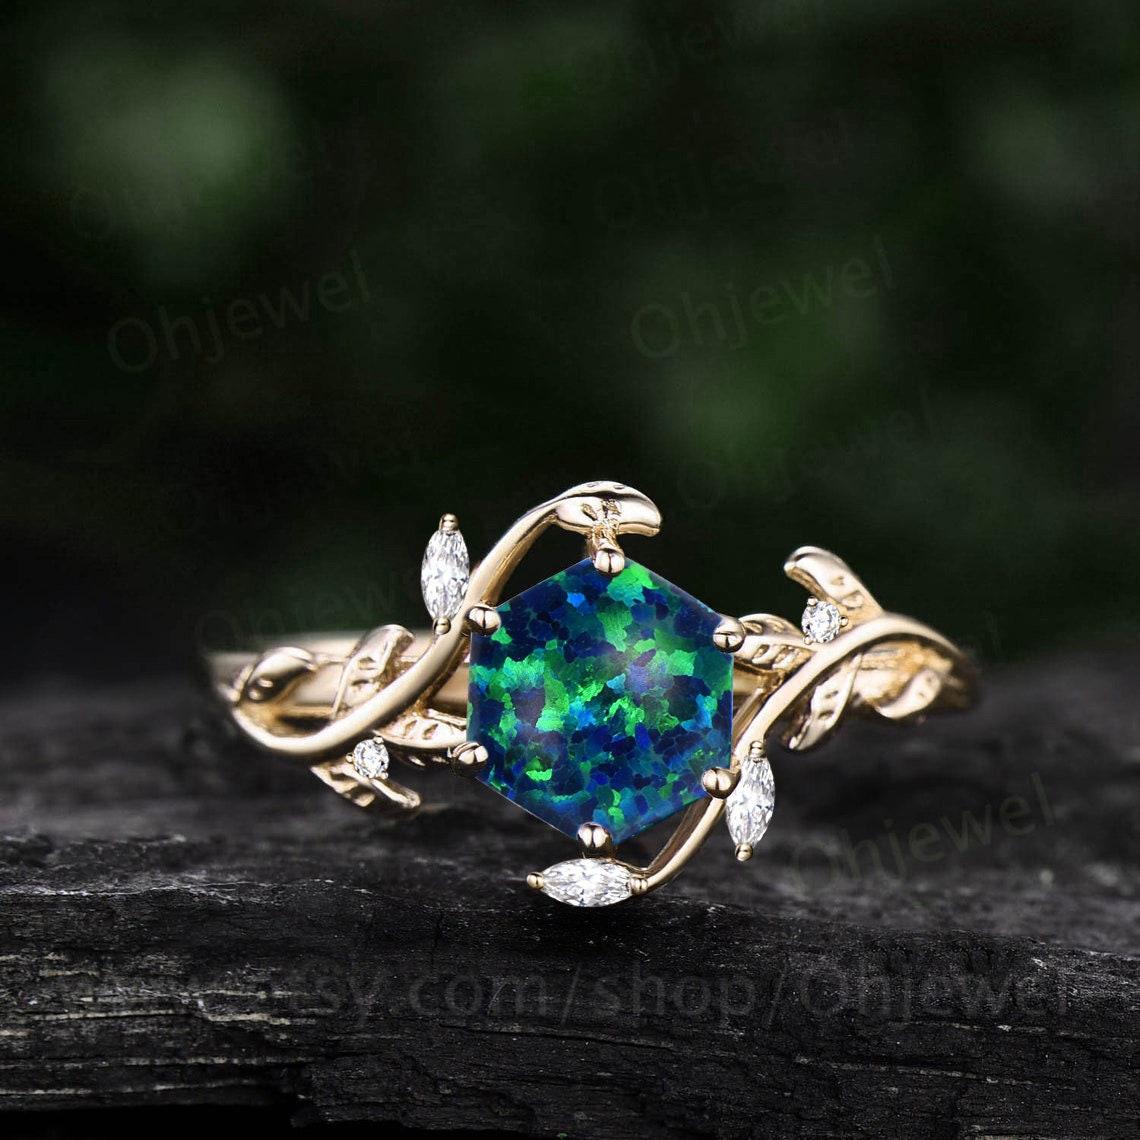 Buy Opal Rings for Women - Masterpiece Jewellery – Masterpiece Jewellery  Opal & Gems Sydney Australia | Online Shop